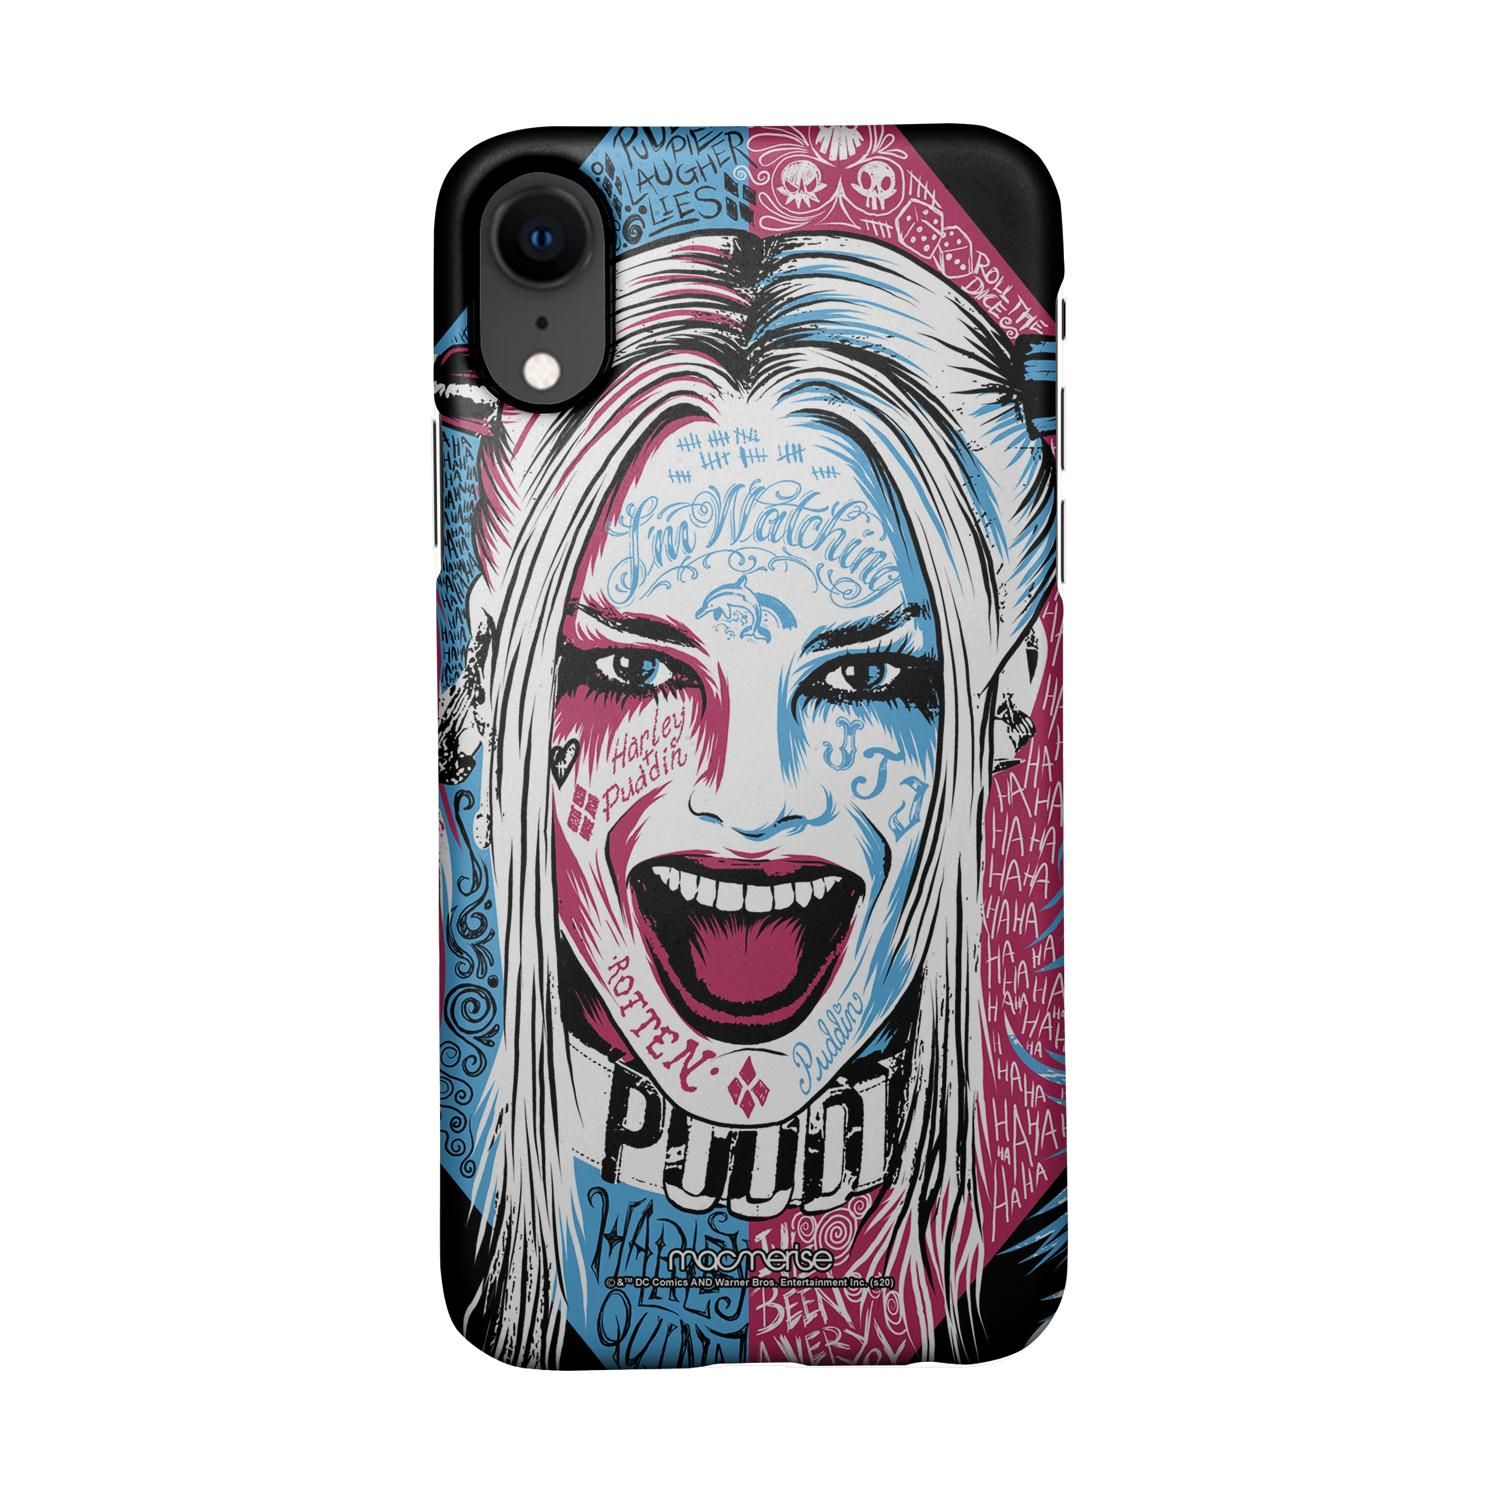 Buy Wicked Harley Quinn - Sleek Phone Case for iPhone XR Online